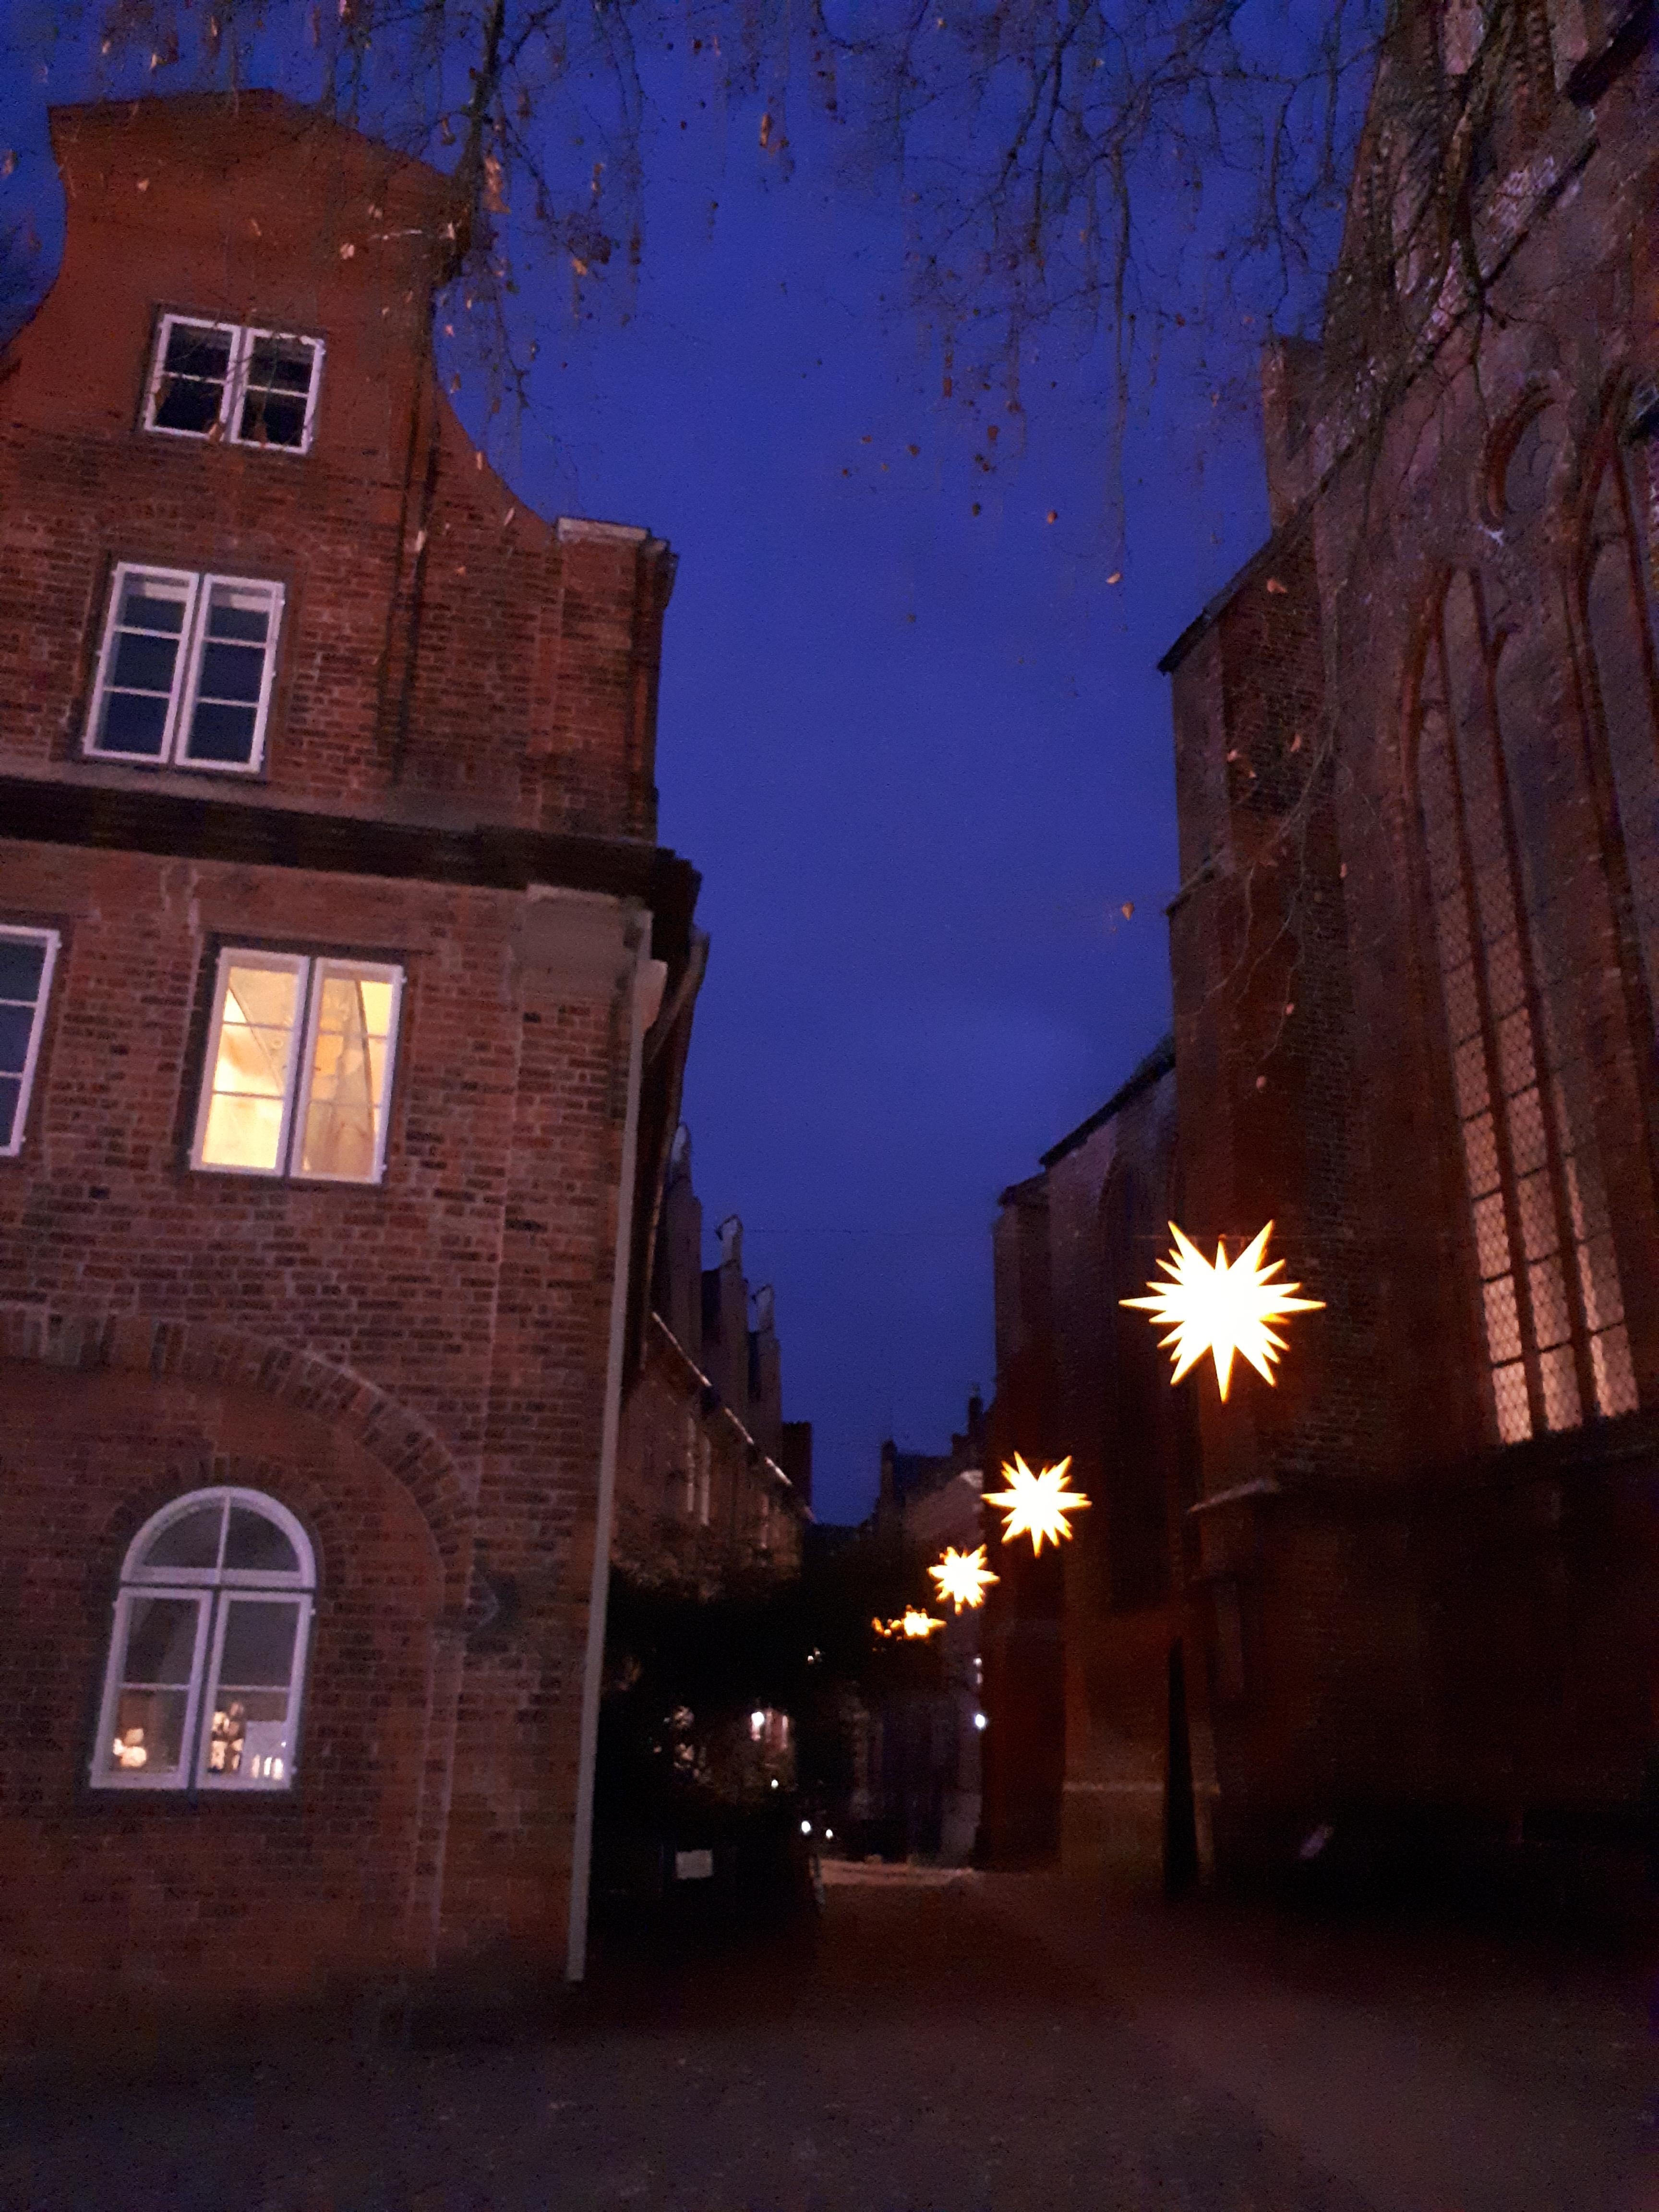 Wunderschönes Lübeck
#lübeck #altstadt #weihnachten #herrenhuter #stern